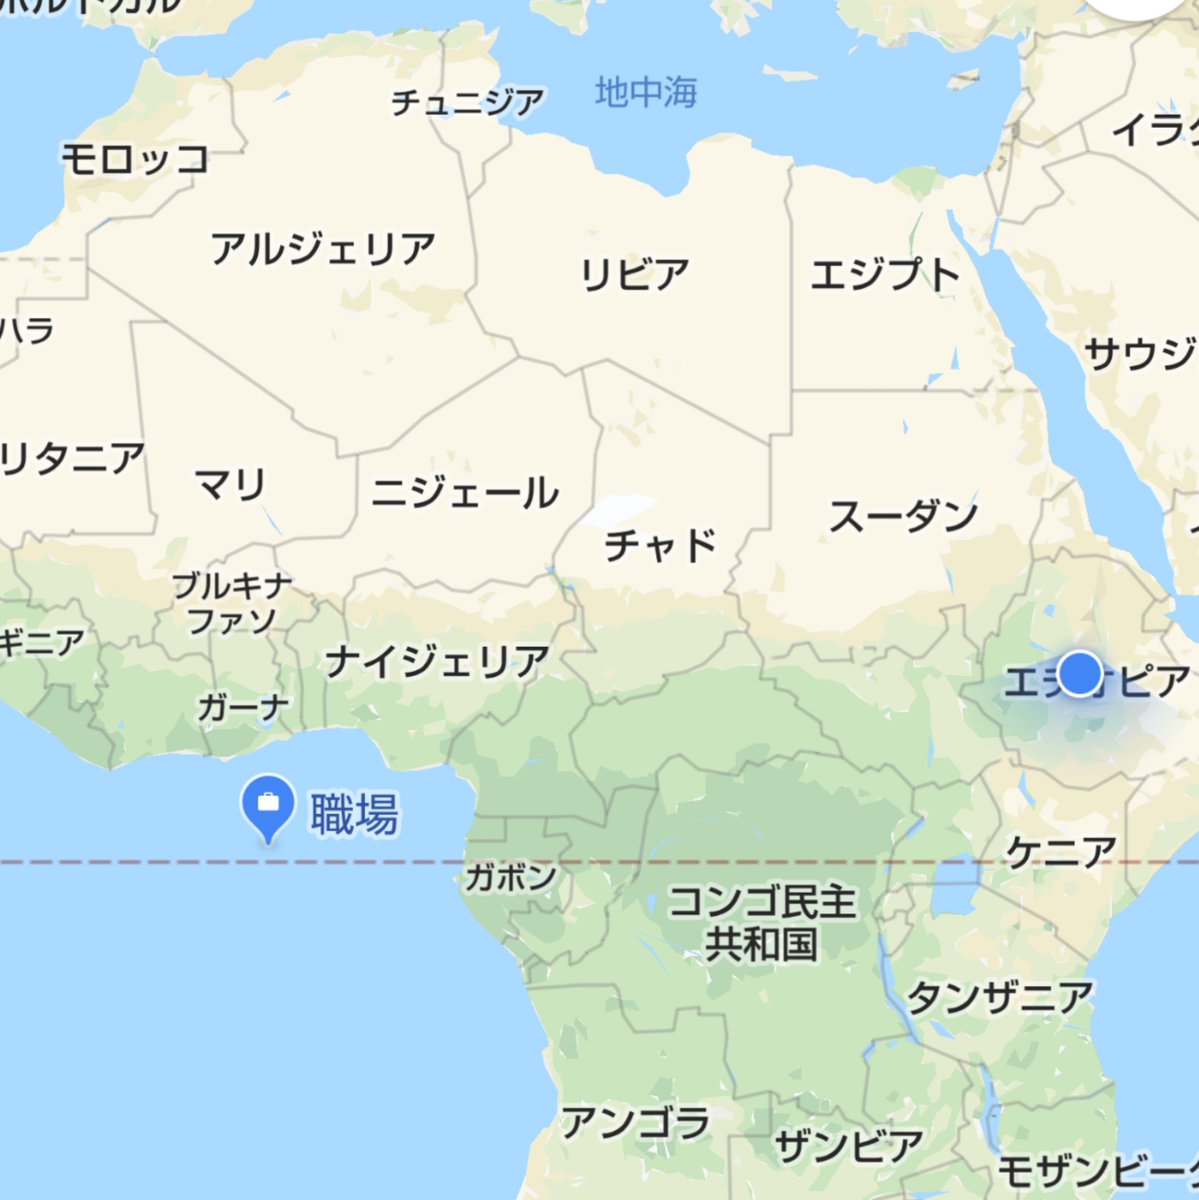 Google Maps Pa Twitter Ryo Takahashi さん おはようございます Google マップの職場の住所が正しくない場合は こちらのヘルプを参考に住所を変更してみてください T Co Rnb6pag4j9 その後の状況はいかがですか